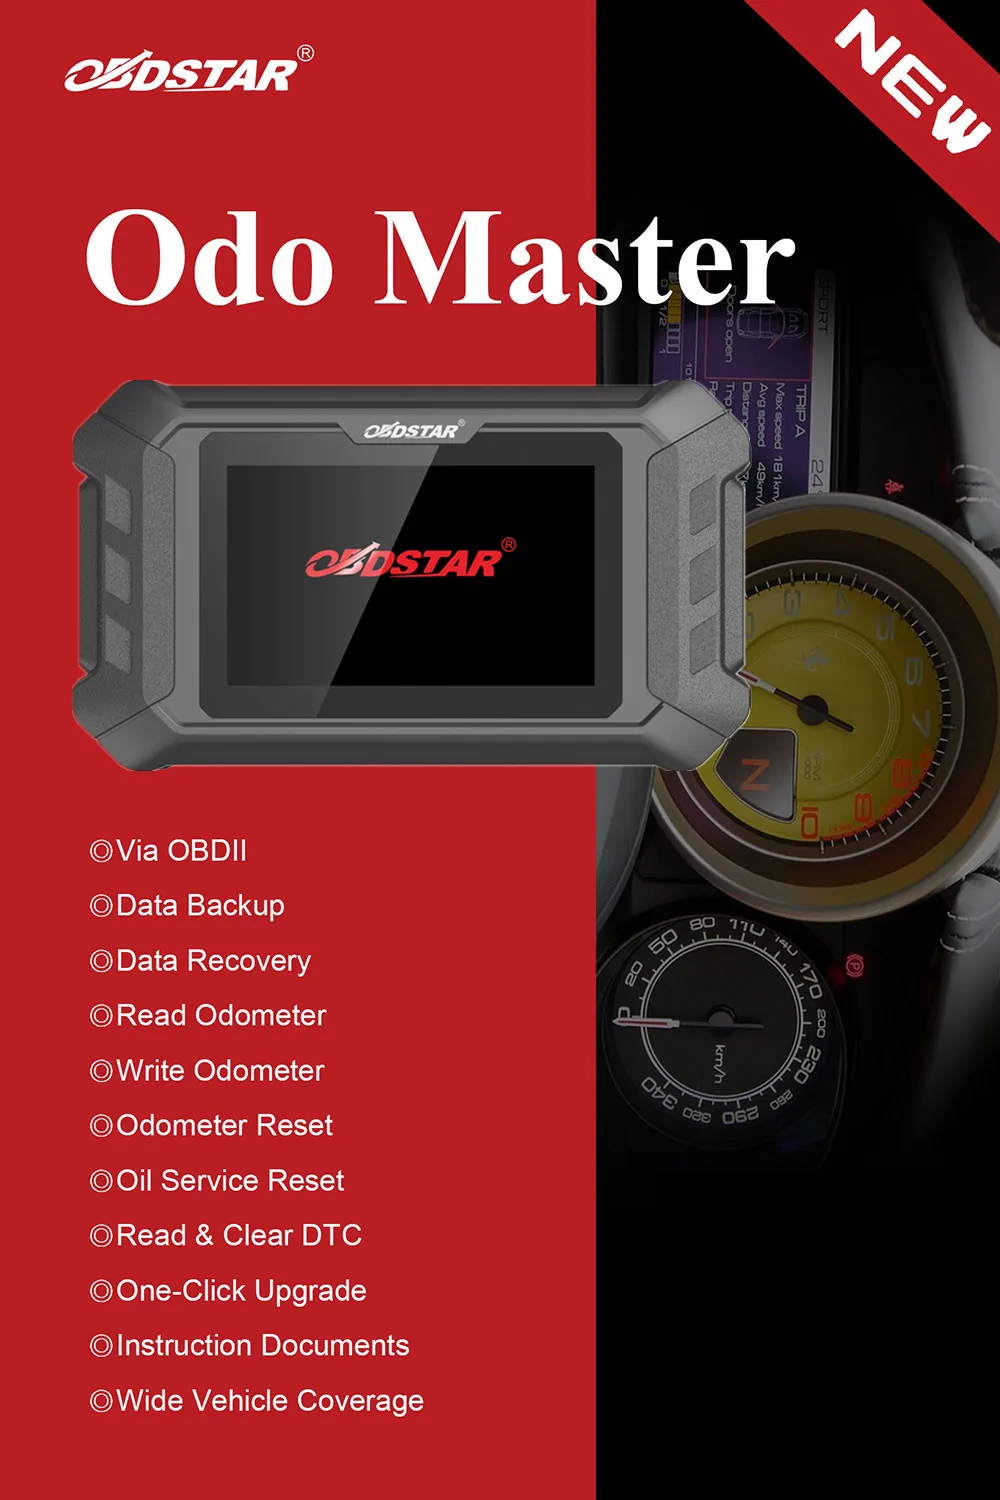 OBDSTAR ODOMASTER ODO MASTER X300M+ для регулировки одометра/OBDII и специальные функции покрывают больше моделей автомобилей, чем X300M